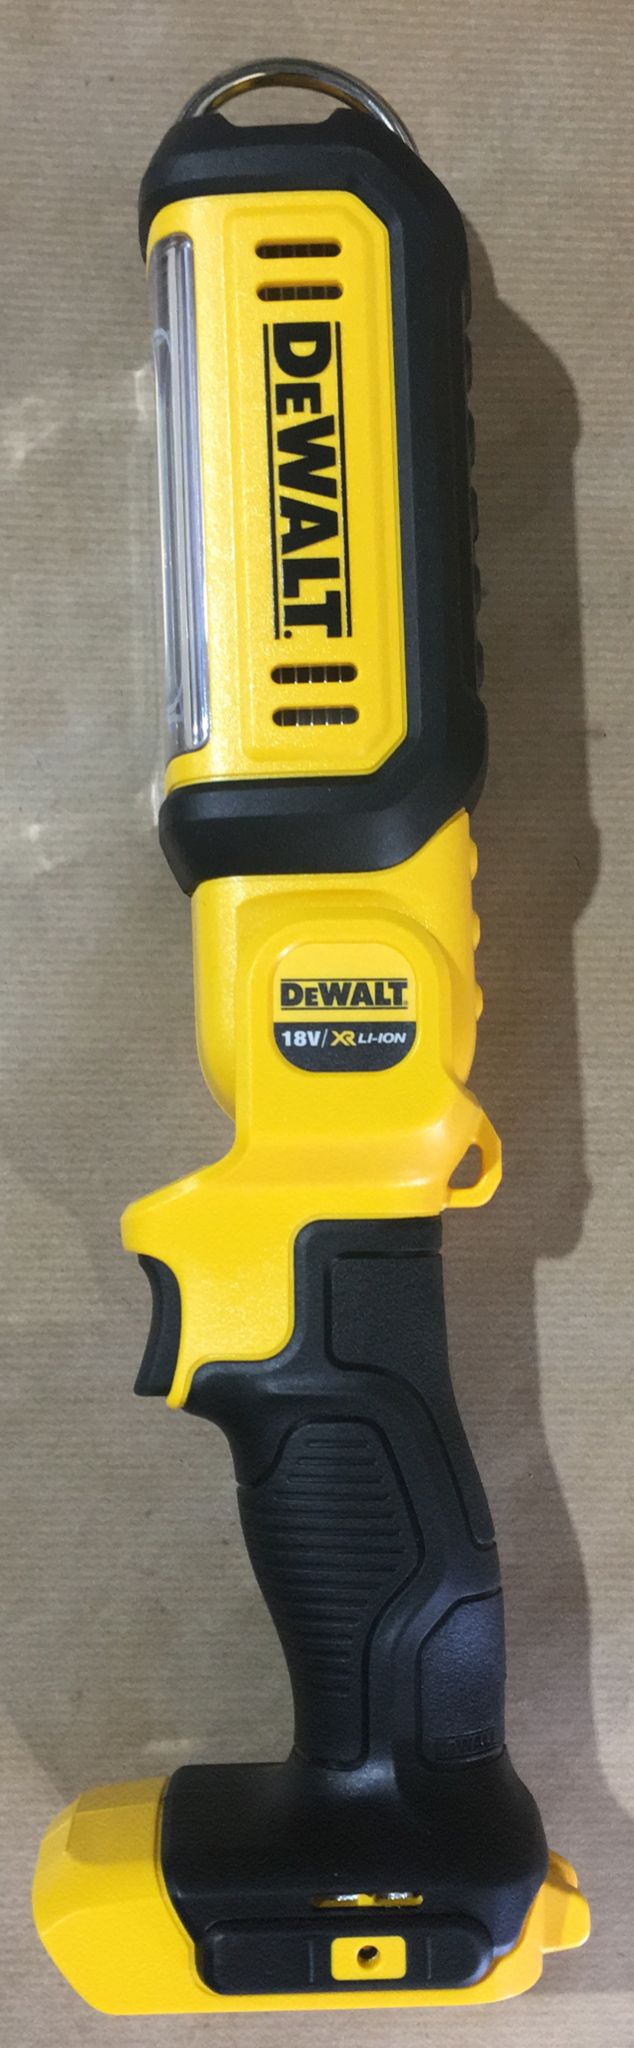 Dewalt DCL050 18v Cordless XR Handheld LED Work Light Without Battery or Charger